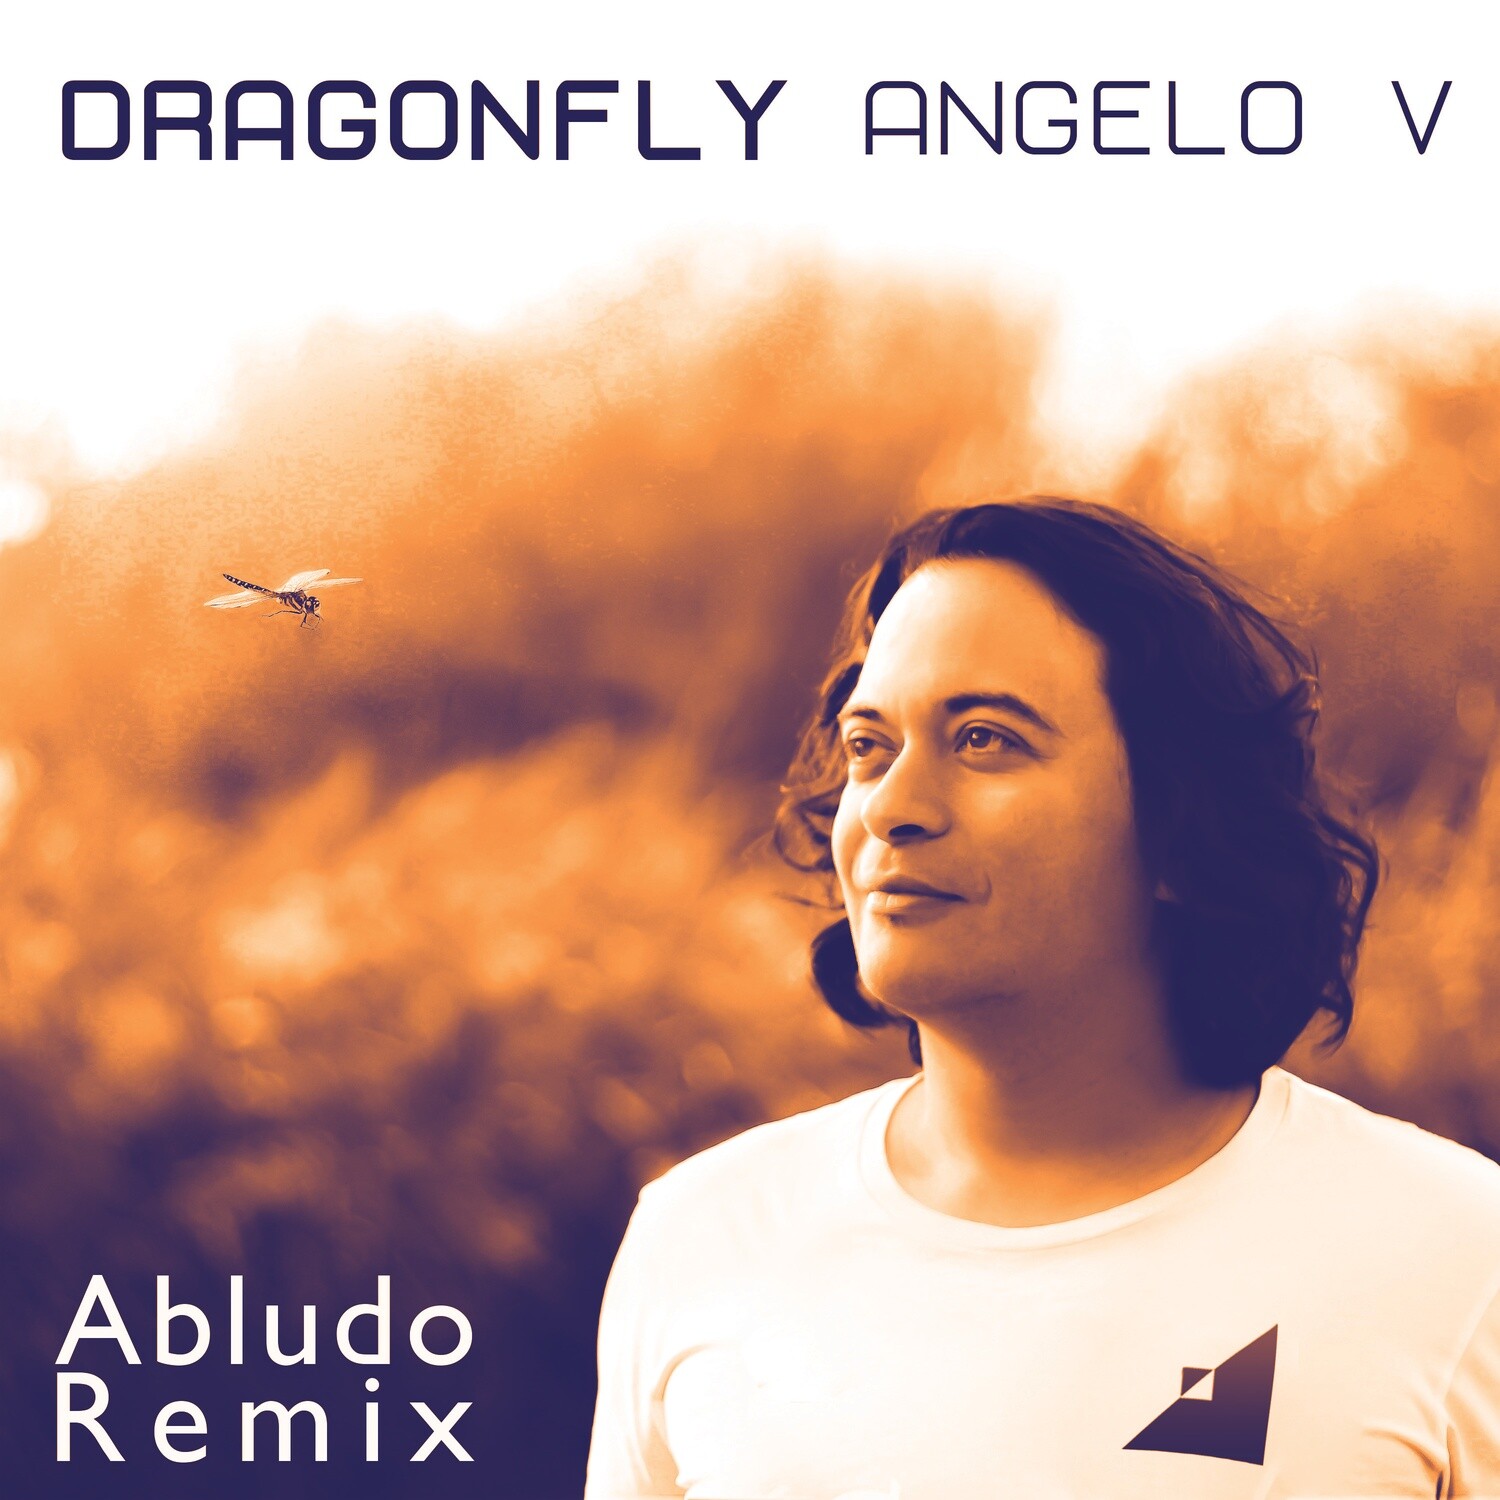 Angelo V - Dragonfly (ABLUDO REMIX) MP3